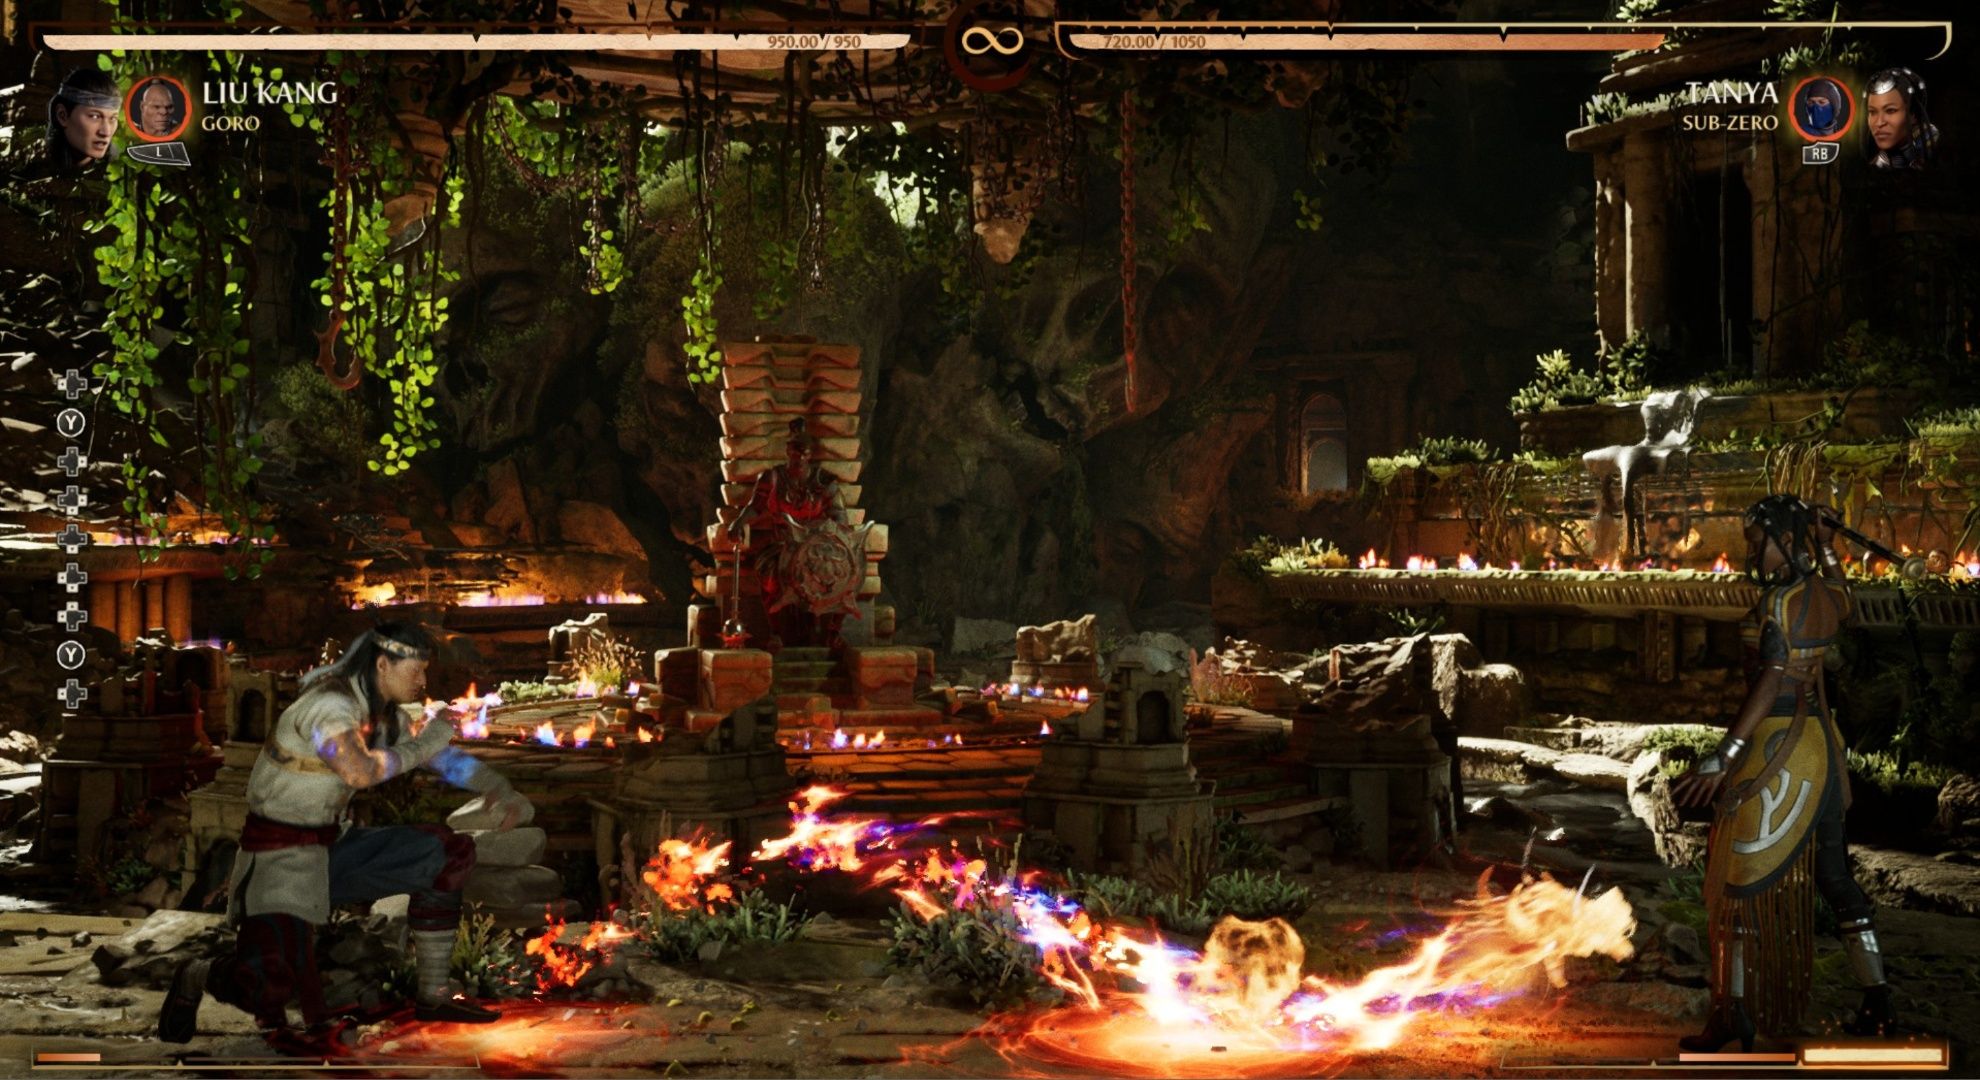 Liu Kang launching the fire dragon projectile at Tanya in Mortal Kombat 1.